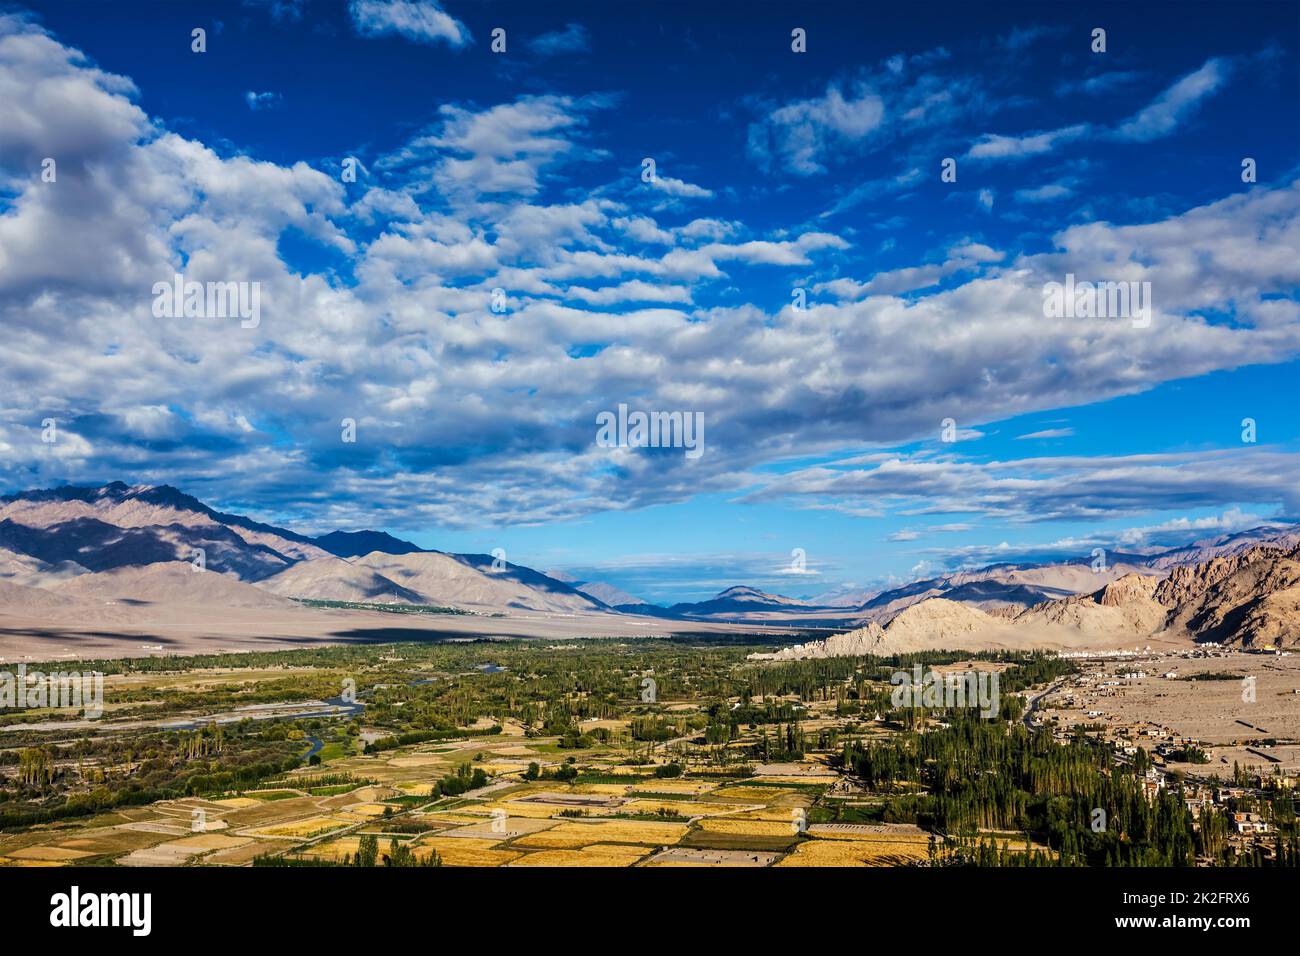 Himalayan landscape of Indus valley surrounded by Karakoram range Himalaya mountains. Ladakh, India Stock Photo